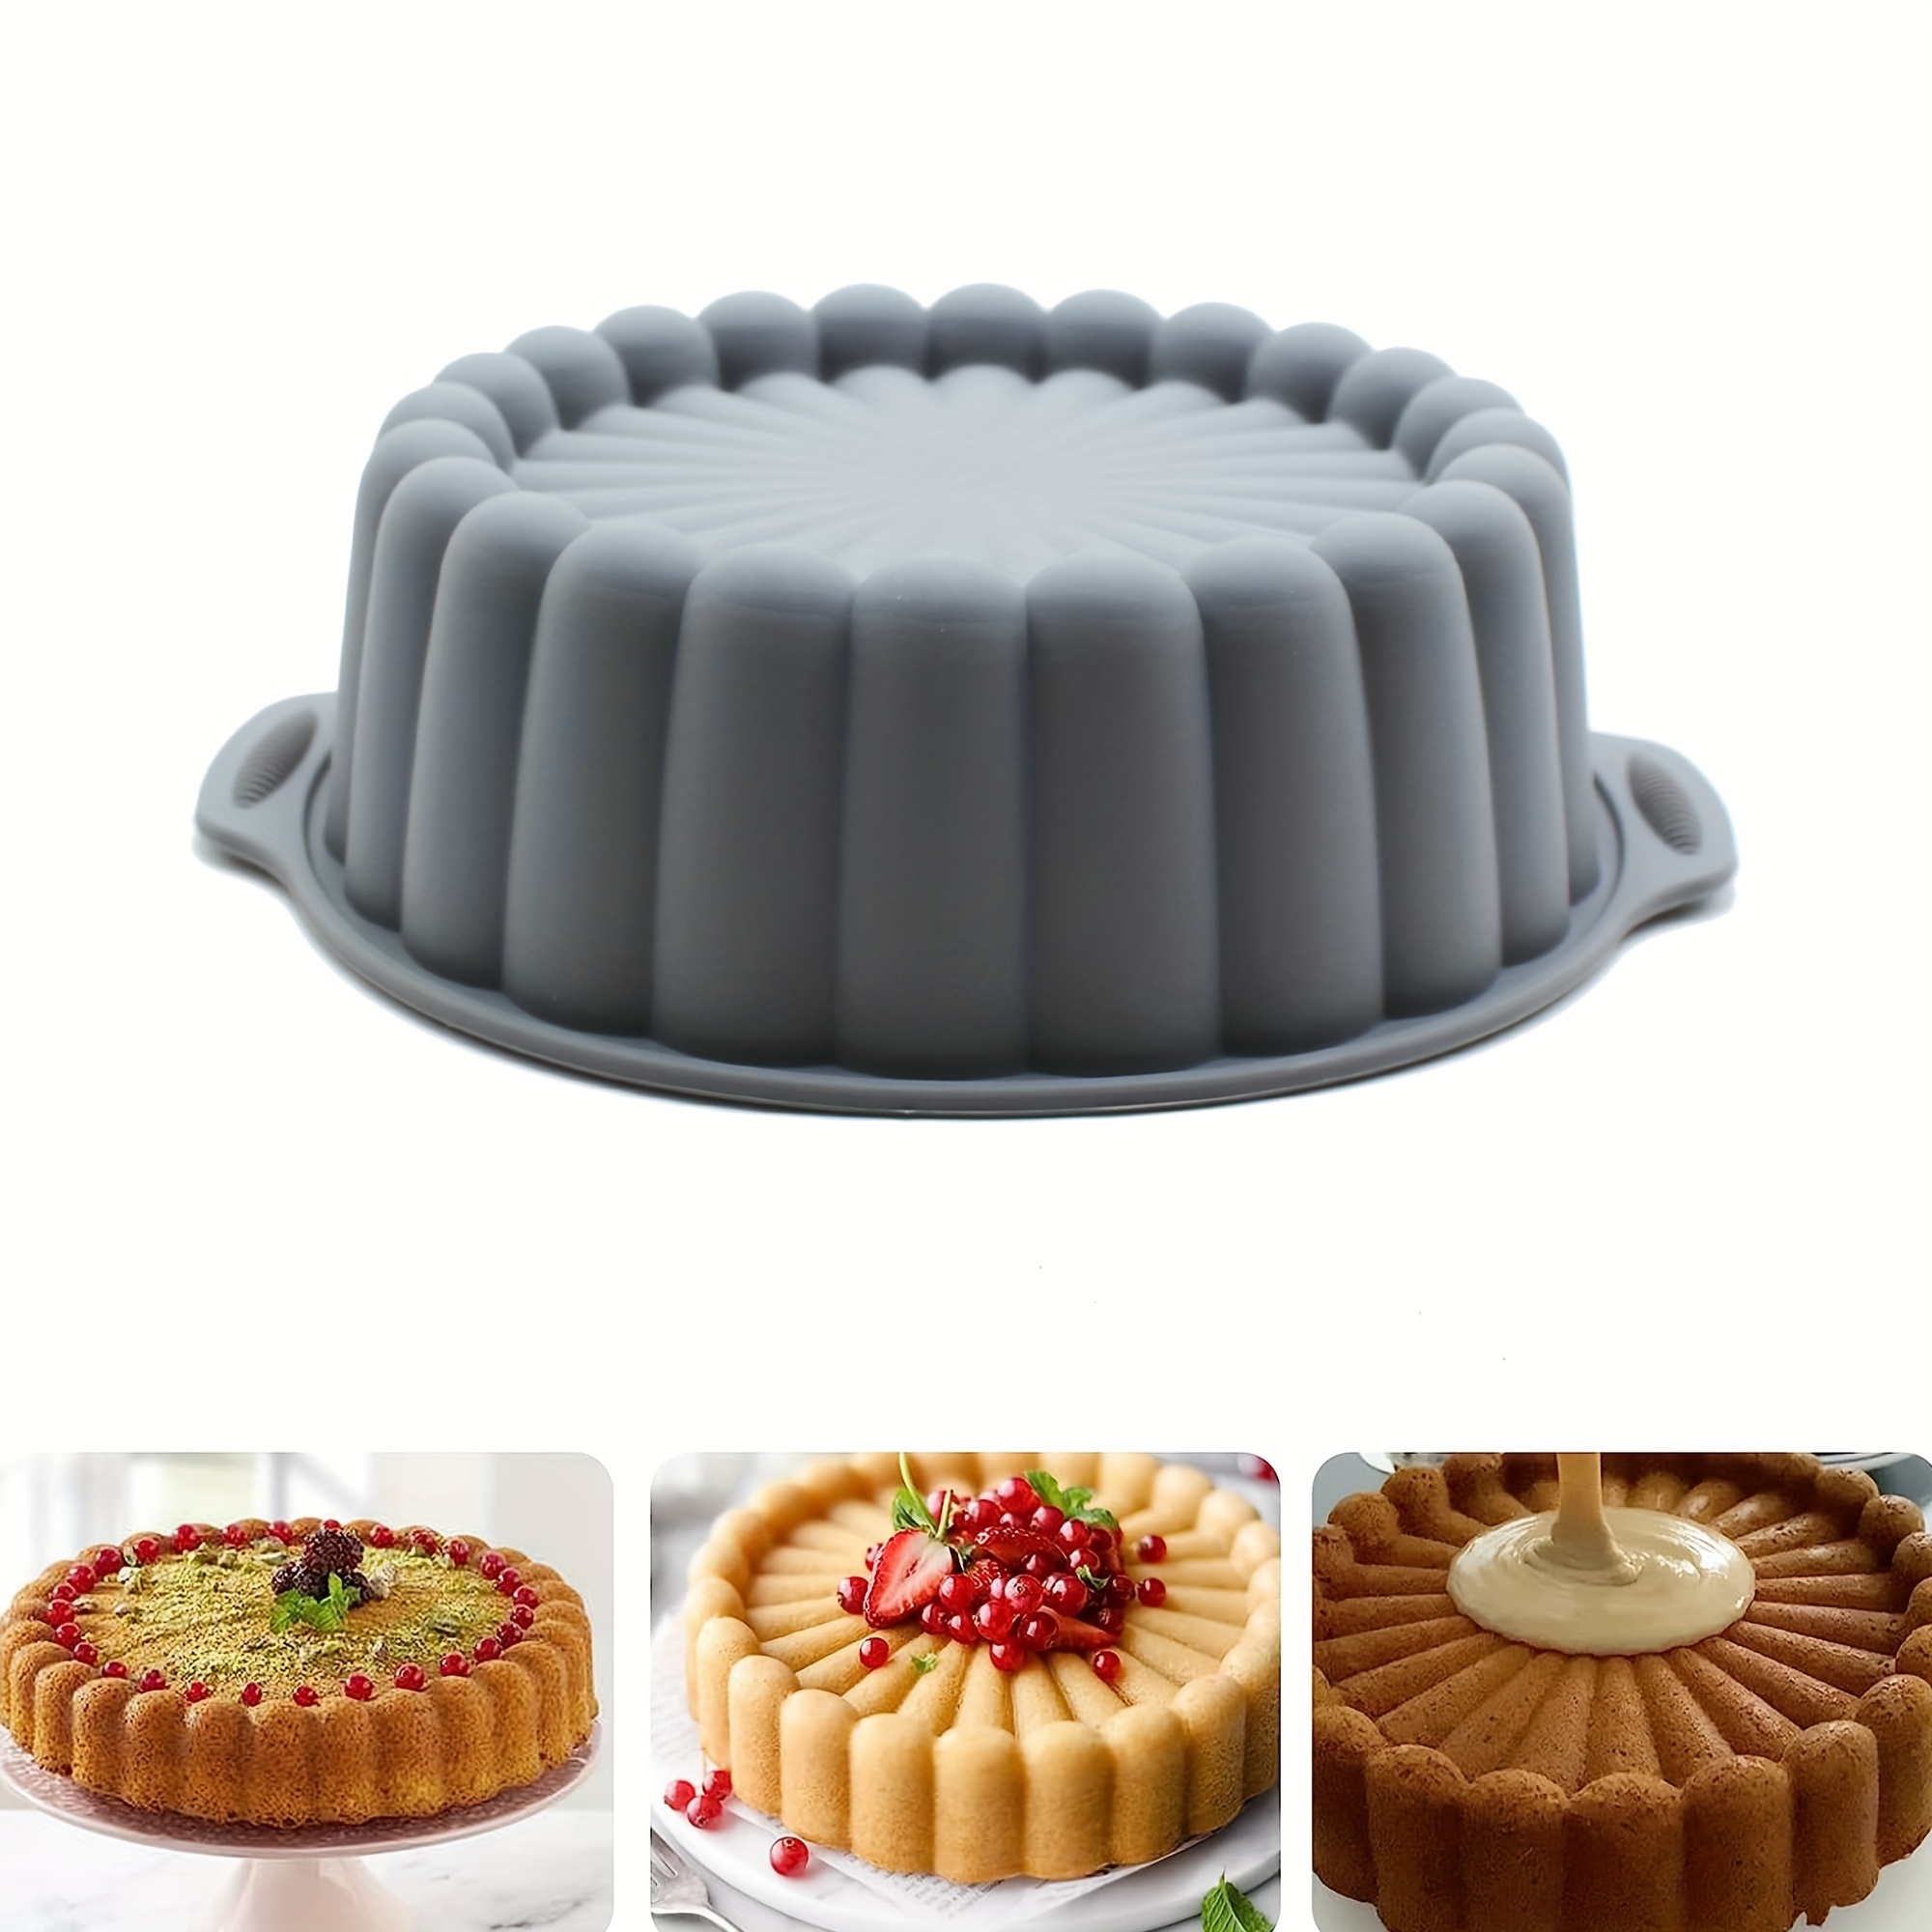  2pcs 8 Inch Silicone Cake Pan for Baking, Round Cake